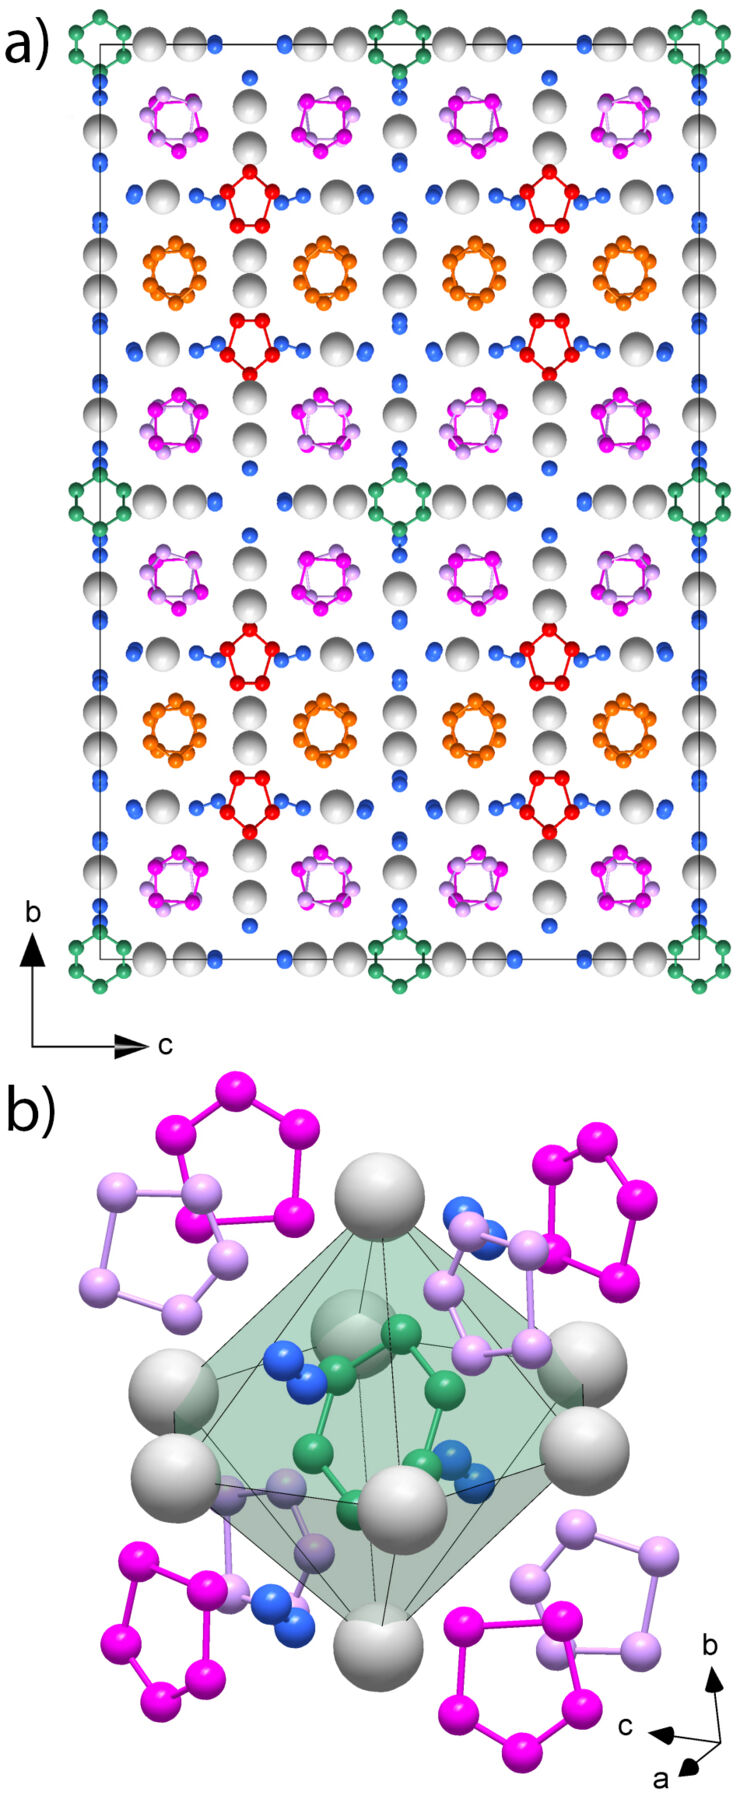 Schematics of Aromatic hexazine [N₆]⁴⁻ anion featured in  complex structure of the high-pressure potassium nitrogen compound K₉N₅₆. 